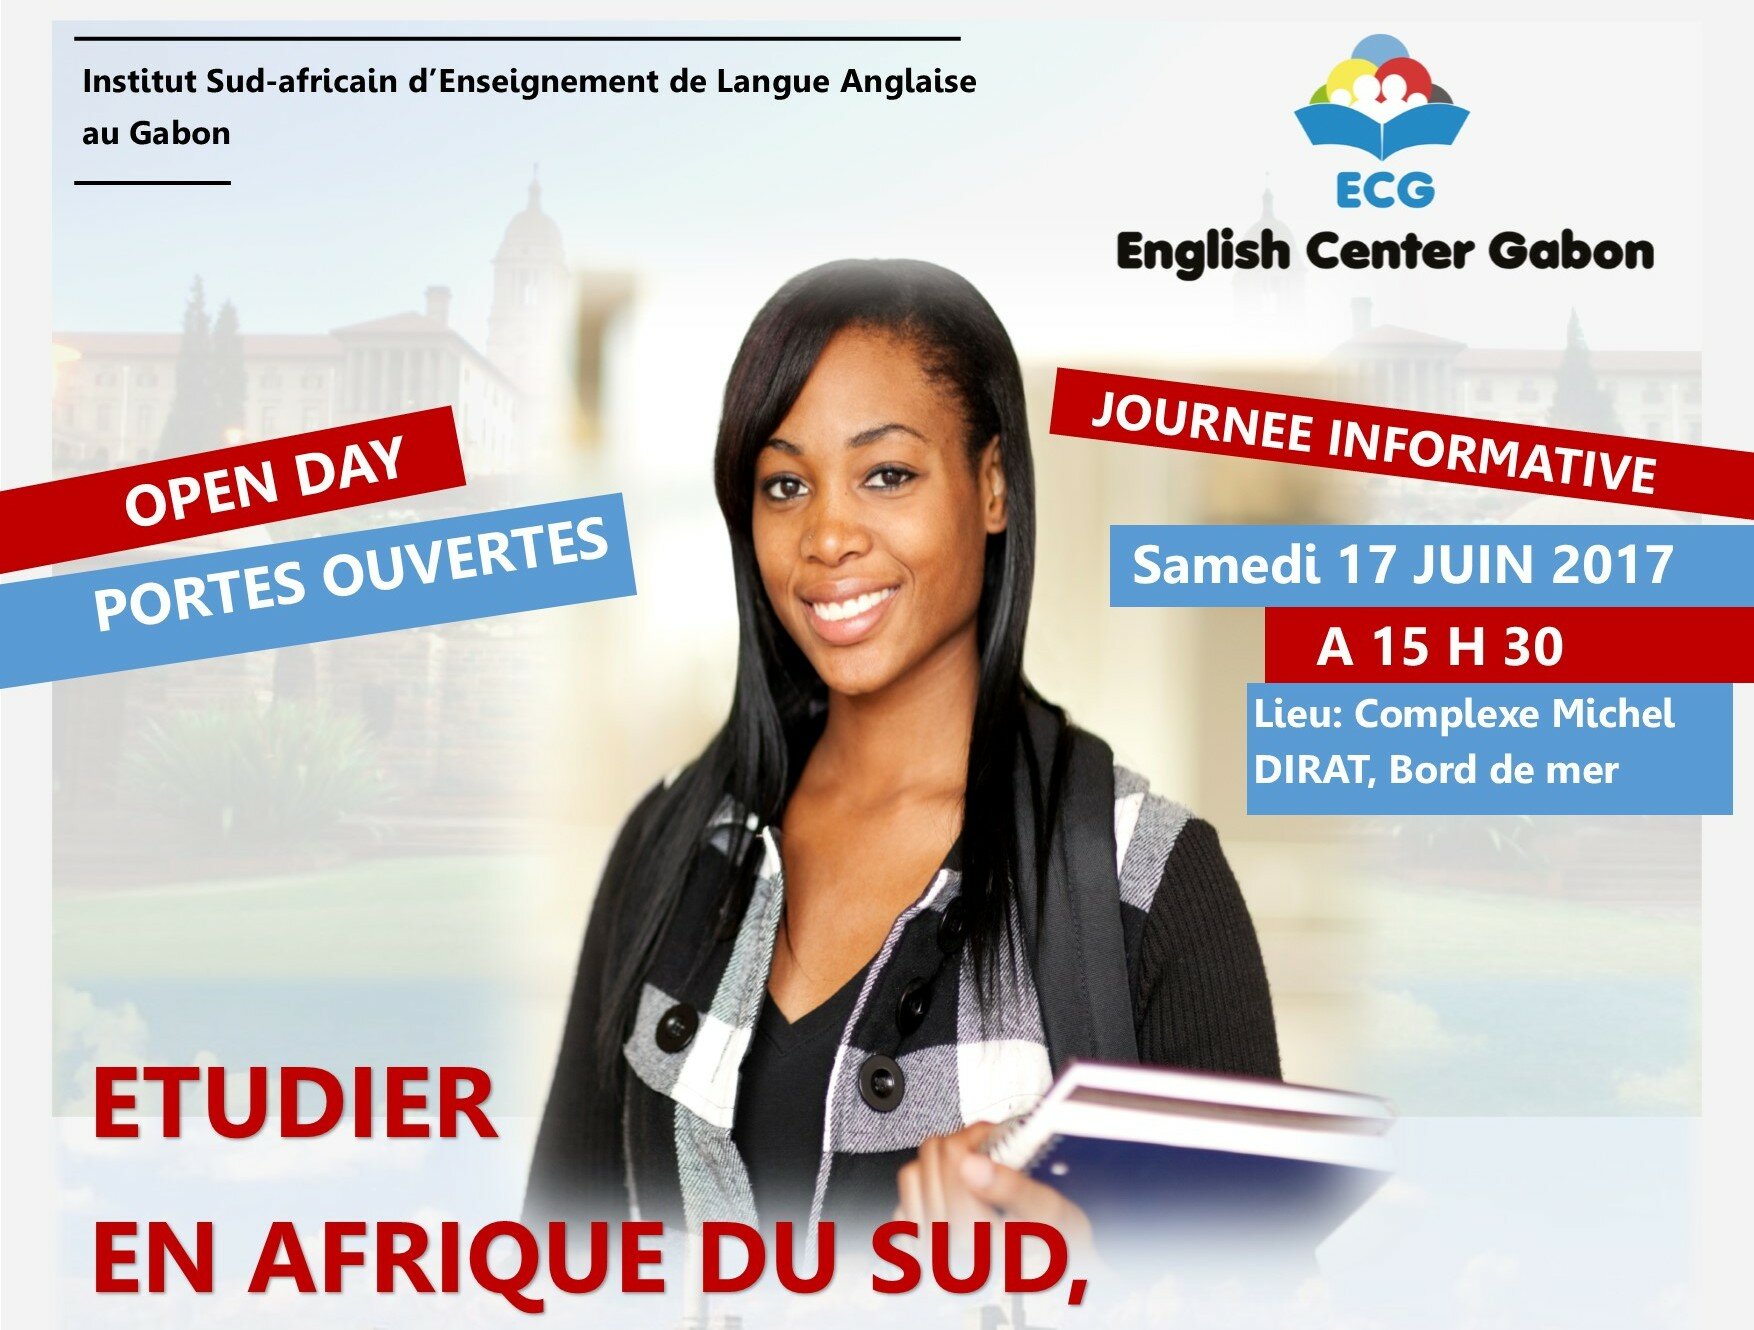 English Center Gabon vous invite à étudier en Afrique du Sud